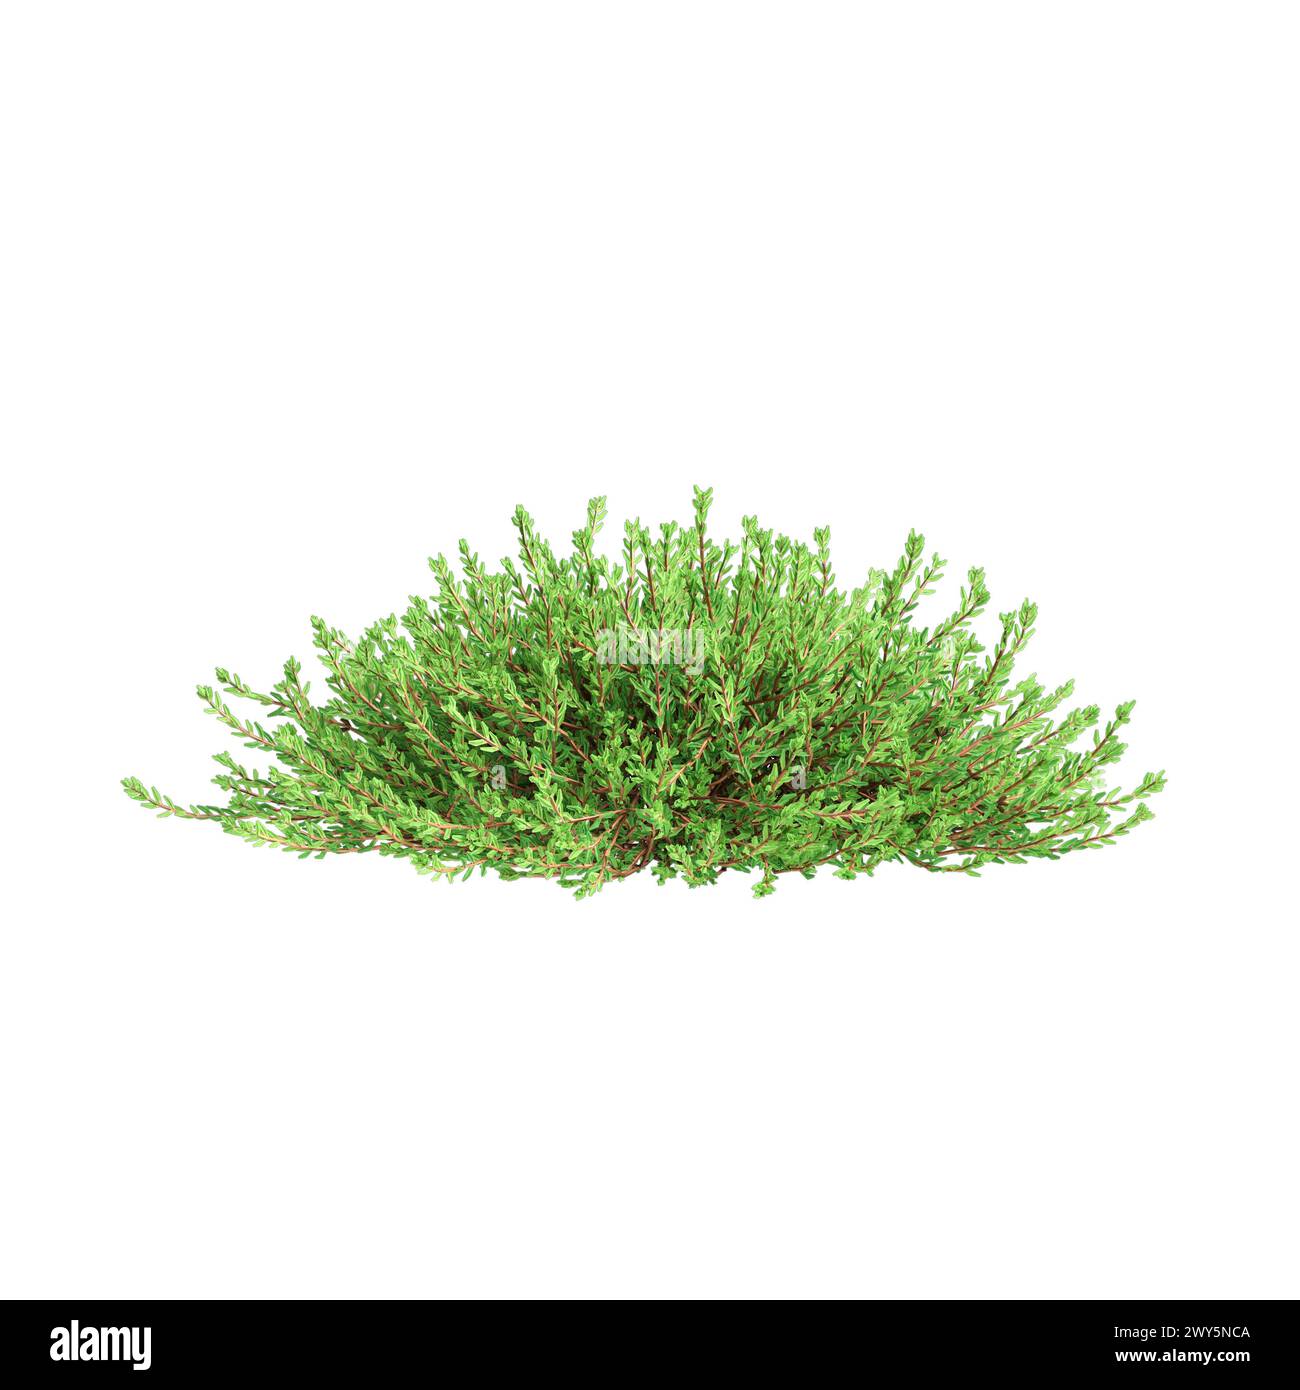 3d illustration of Empetrum nigrum bush isolated on white background Stock Photo